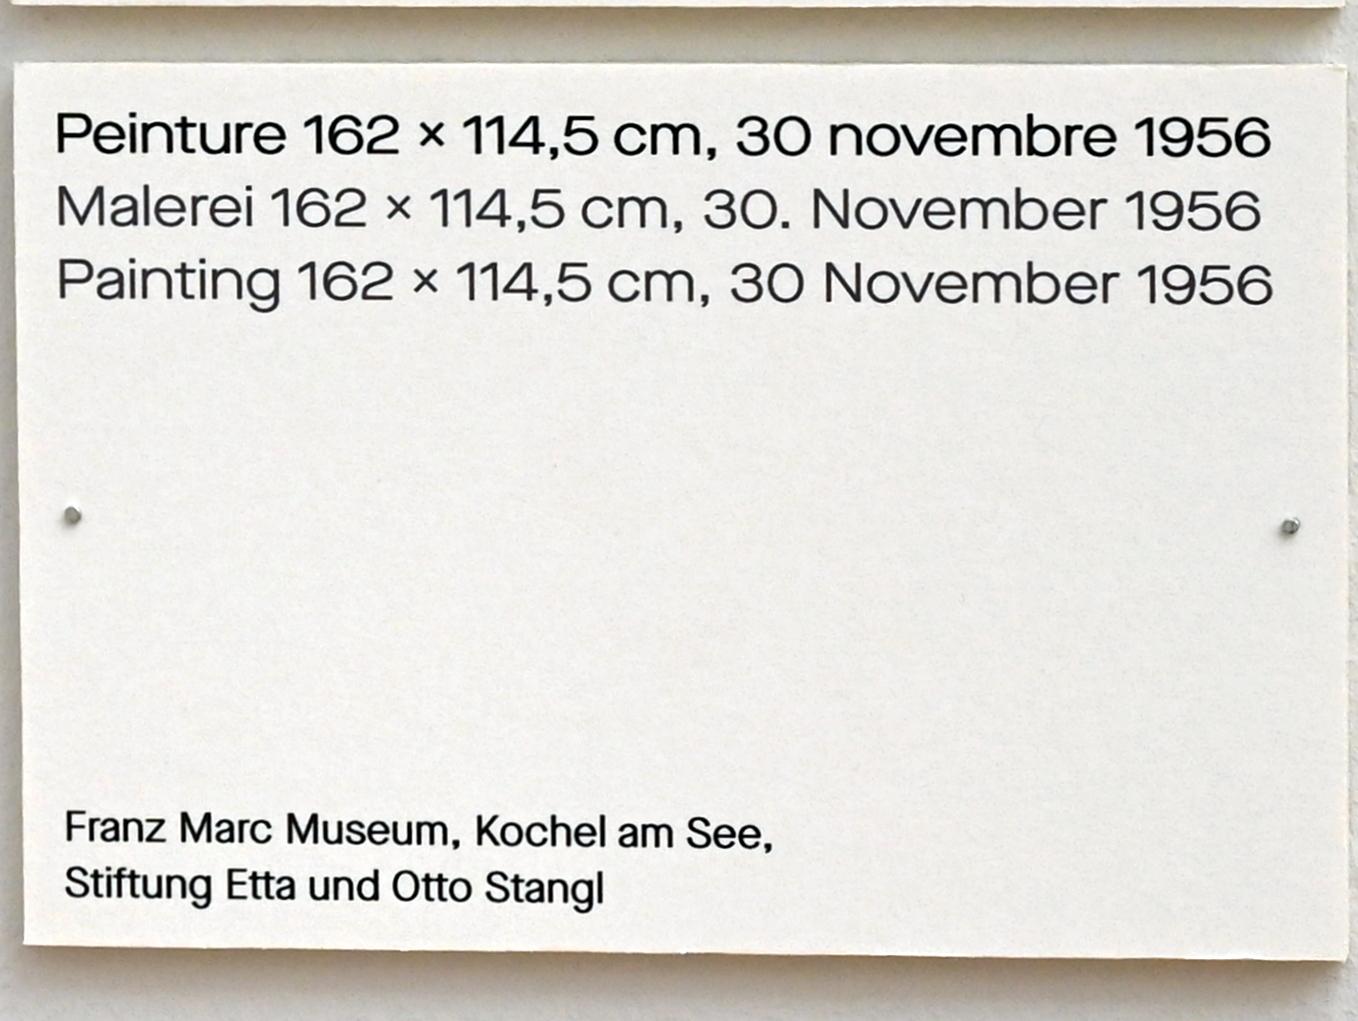 Pierre Soulages (1946–2019), Malerei 162 x 114,5 cm, 30. November 1956, Chemnitz, Kunstsammlungen am Theaterplatz, Ausstellung "Soulages" vom 28.03.-25.07.2021, Saal 6, 1956, Bild 2/2